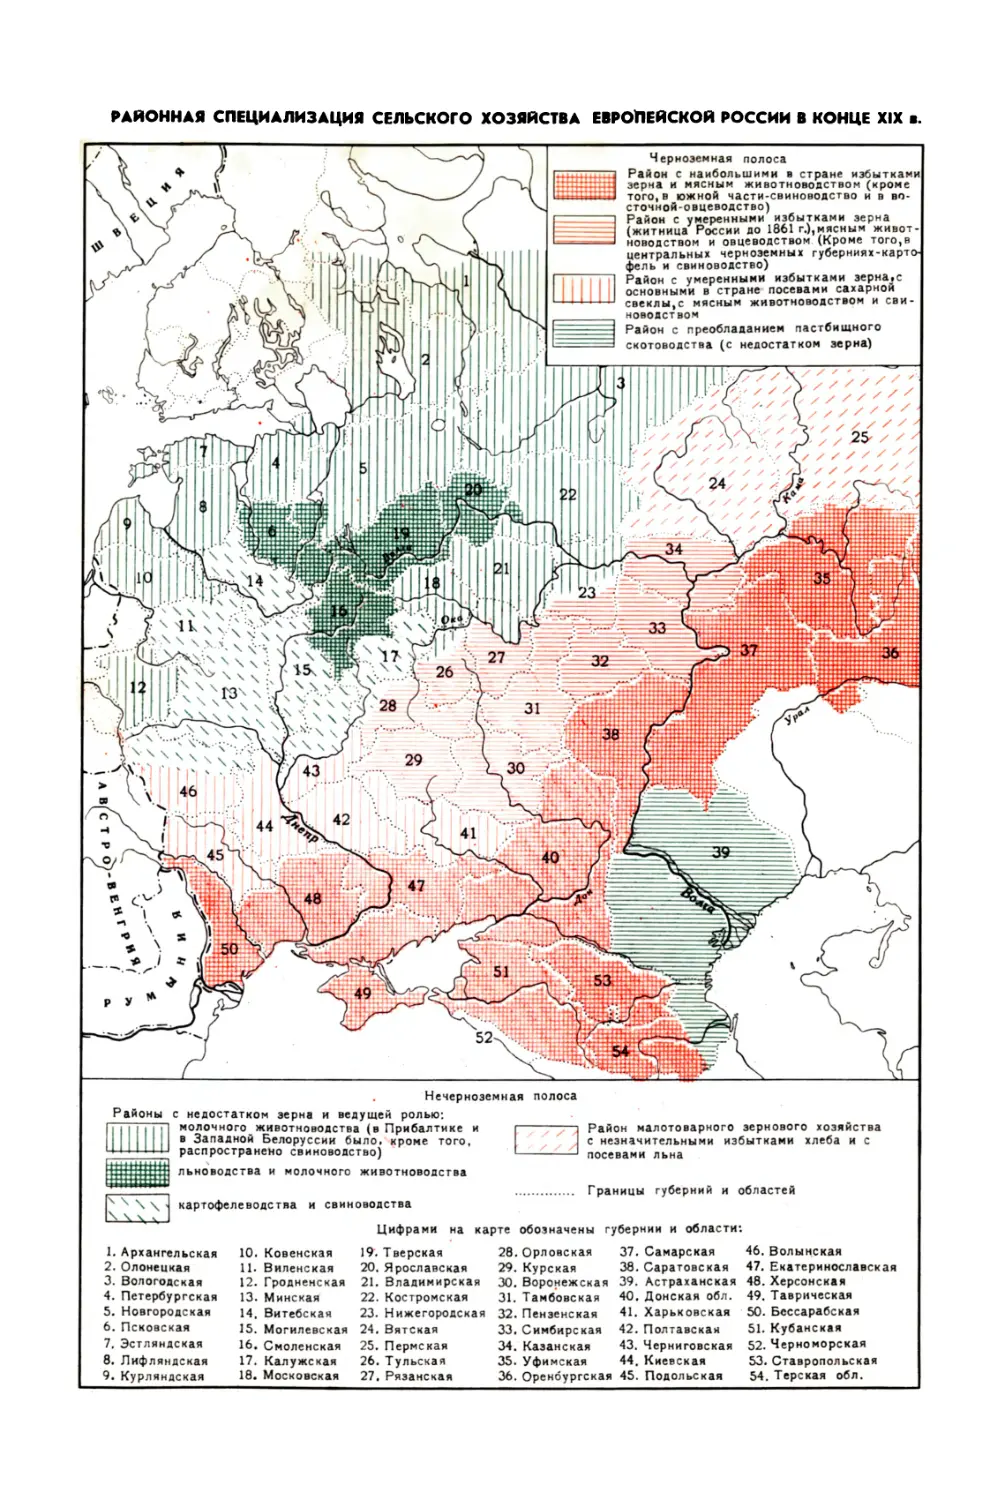 Вклейка. Районная специализация сельского хозяйства Европейской России в конце XIX в.